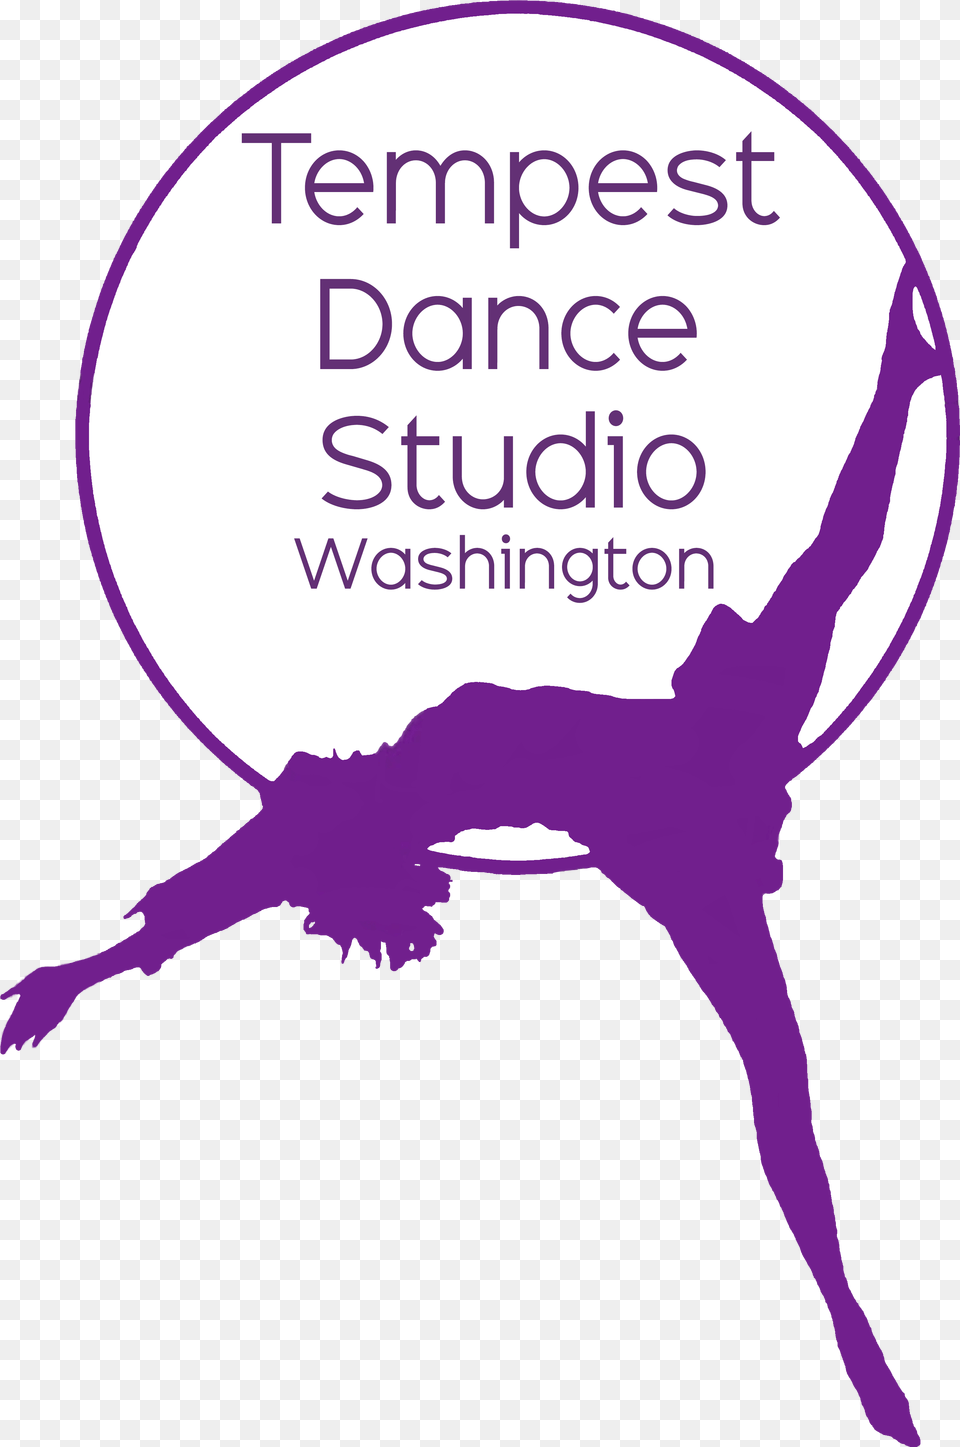 Tempest Dance Studio Washington Tempest Dance Studio, Purple, Dancing, Leisure Activities, Person Png Image